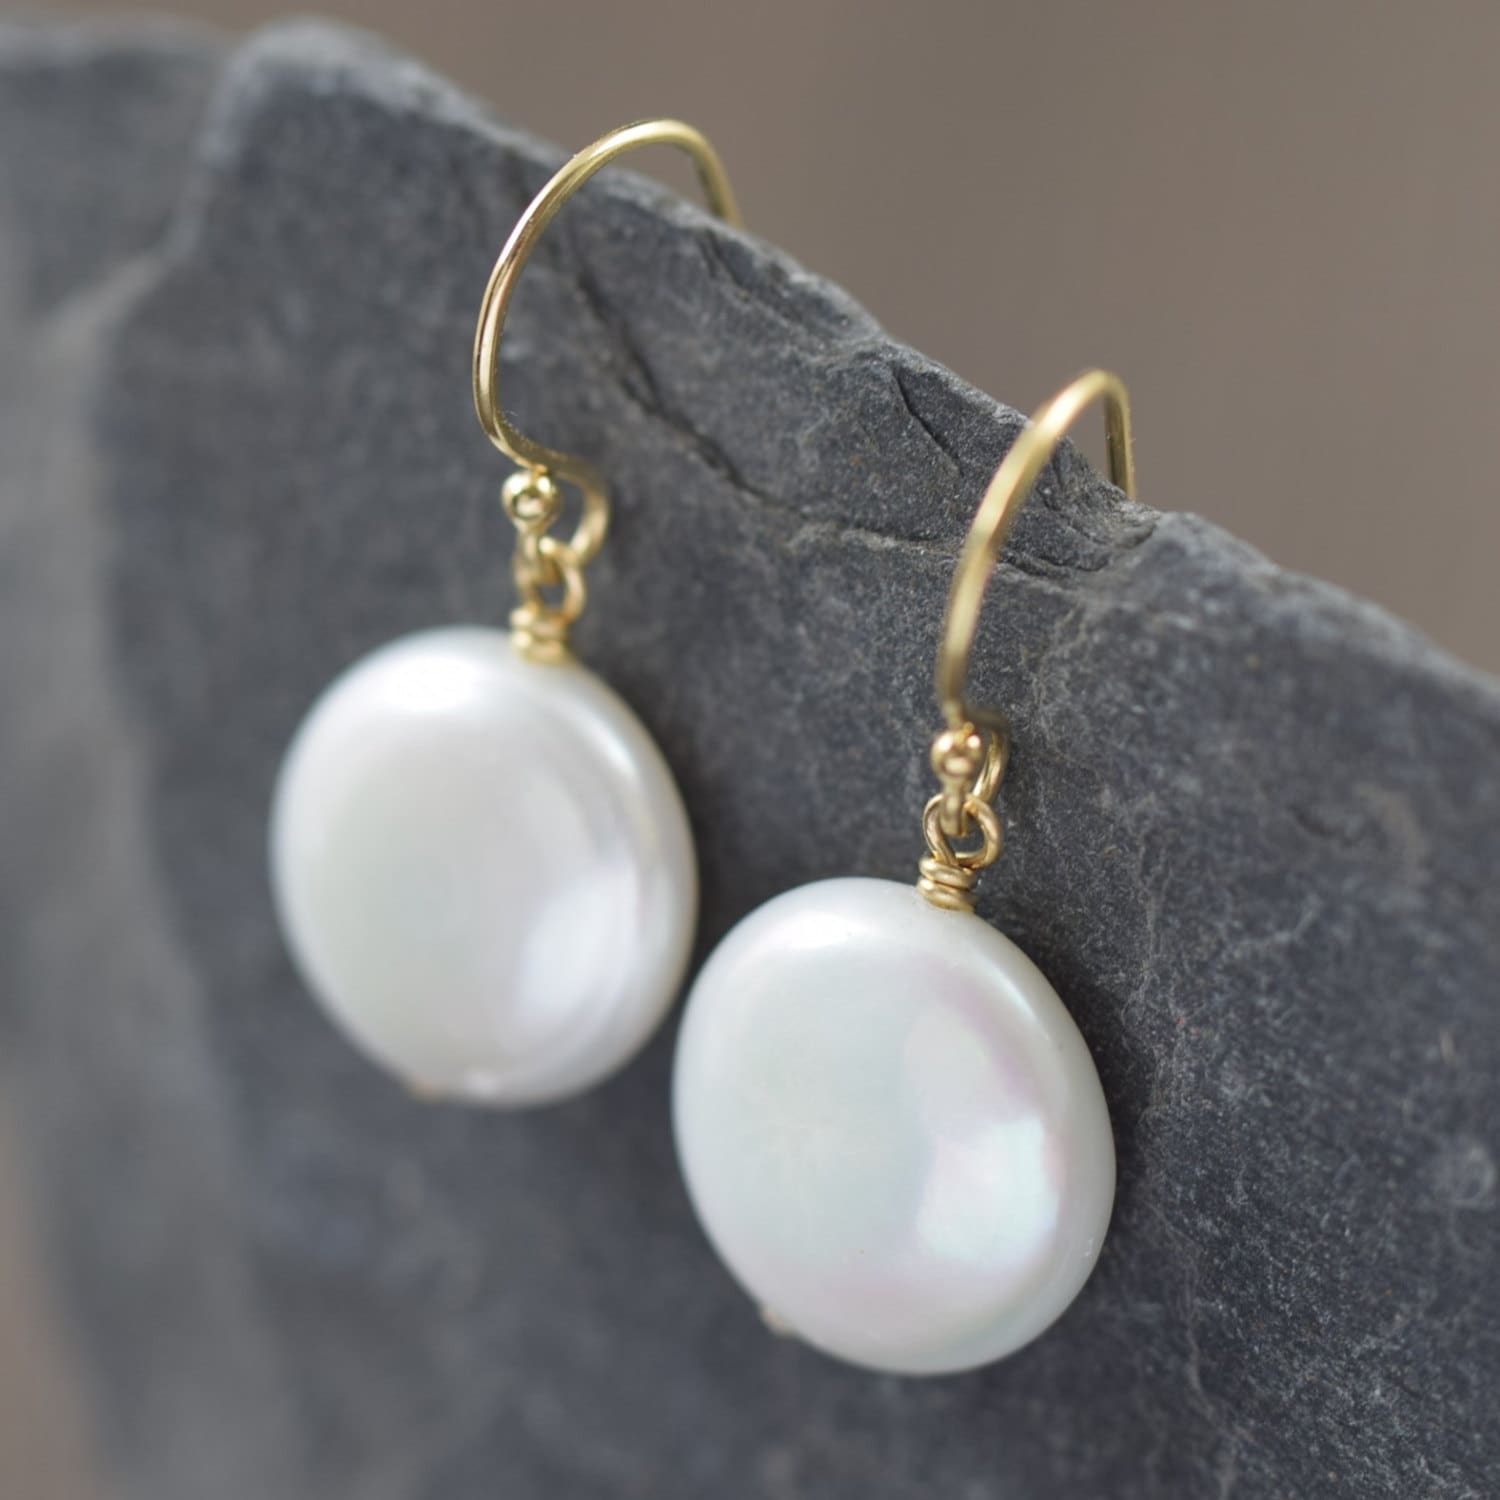 White coin Pearl earrings, AAA Grade, freshwater pearl on gold filled earwire, June Birthstone earrings